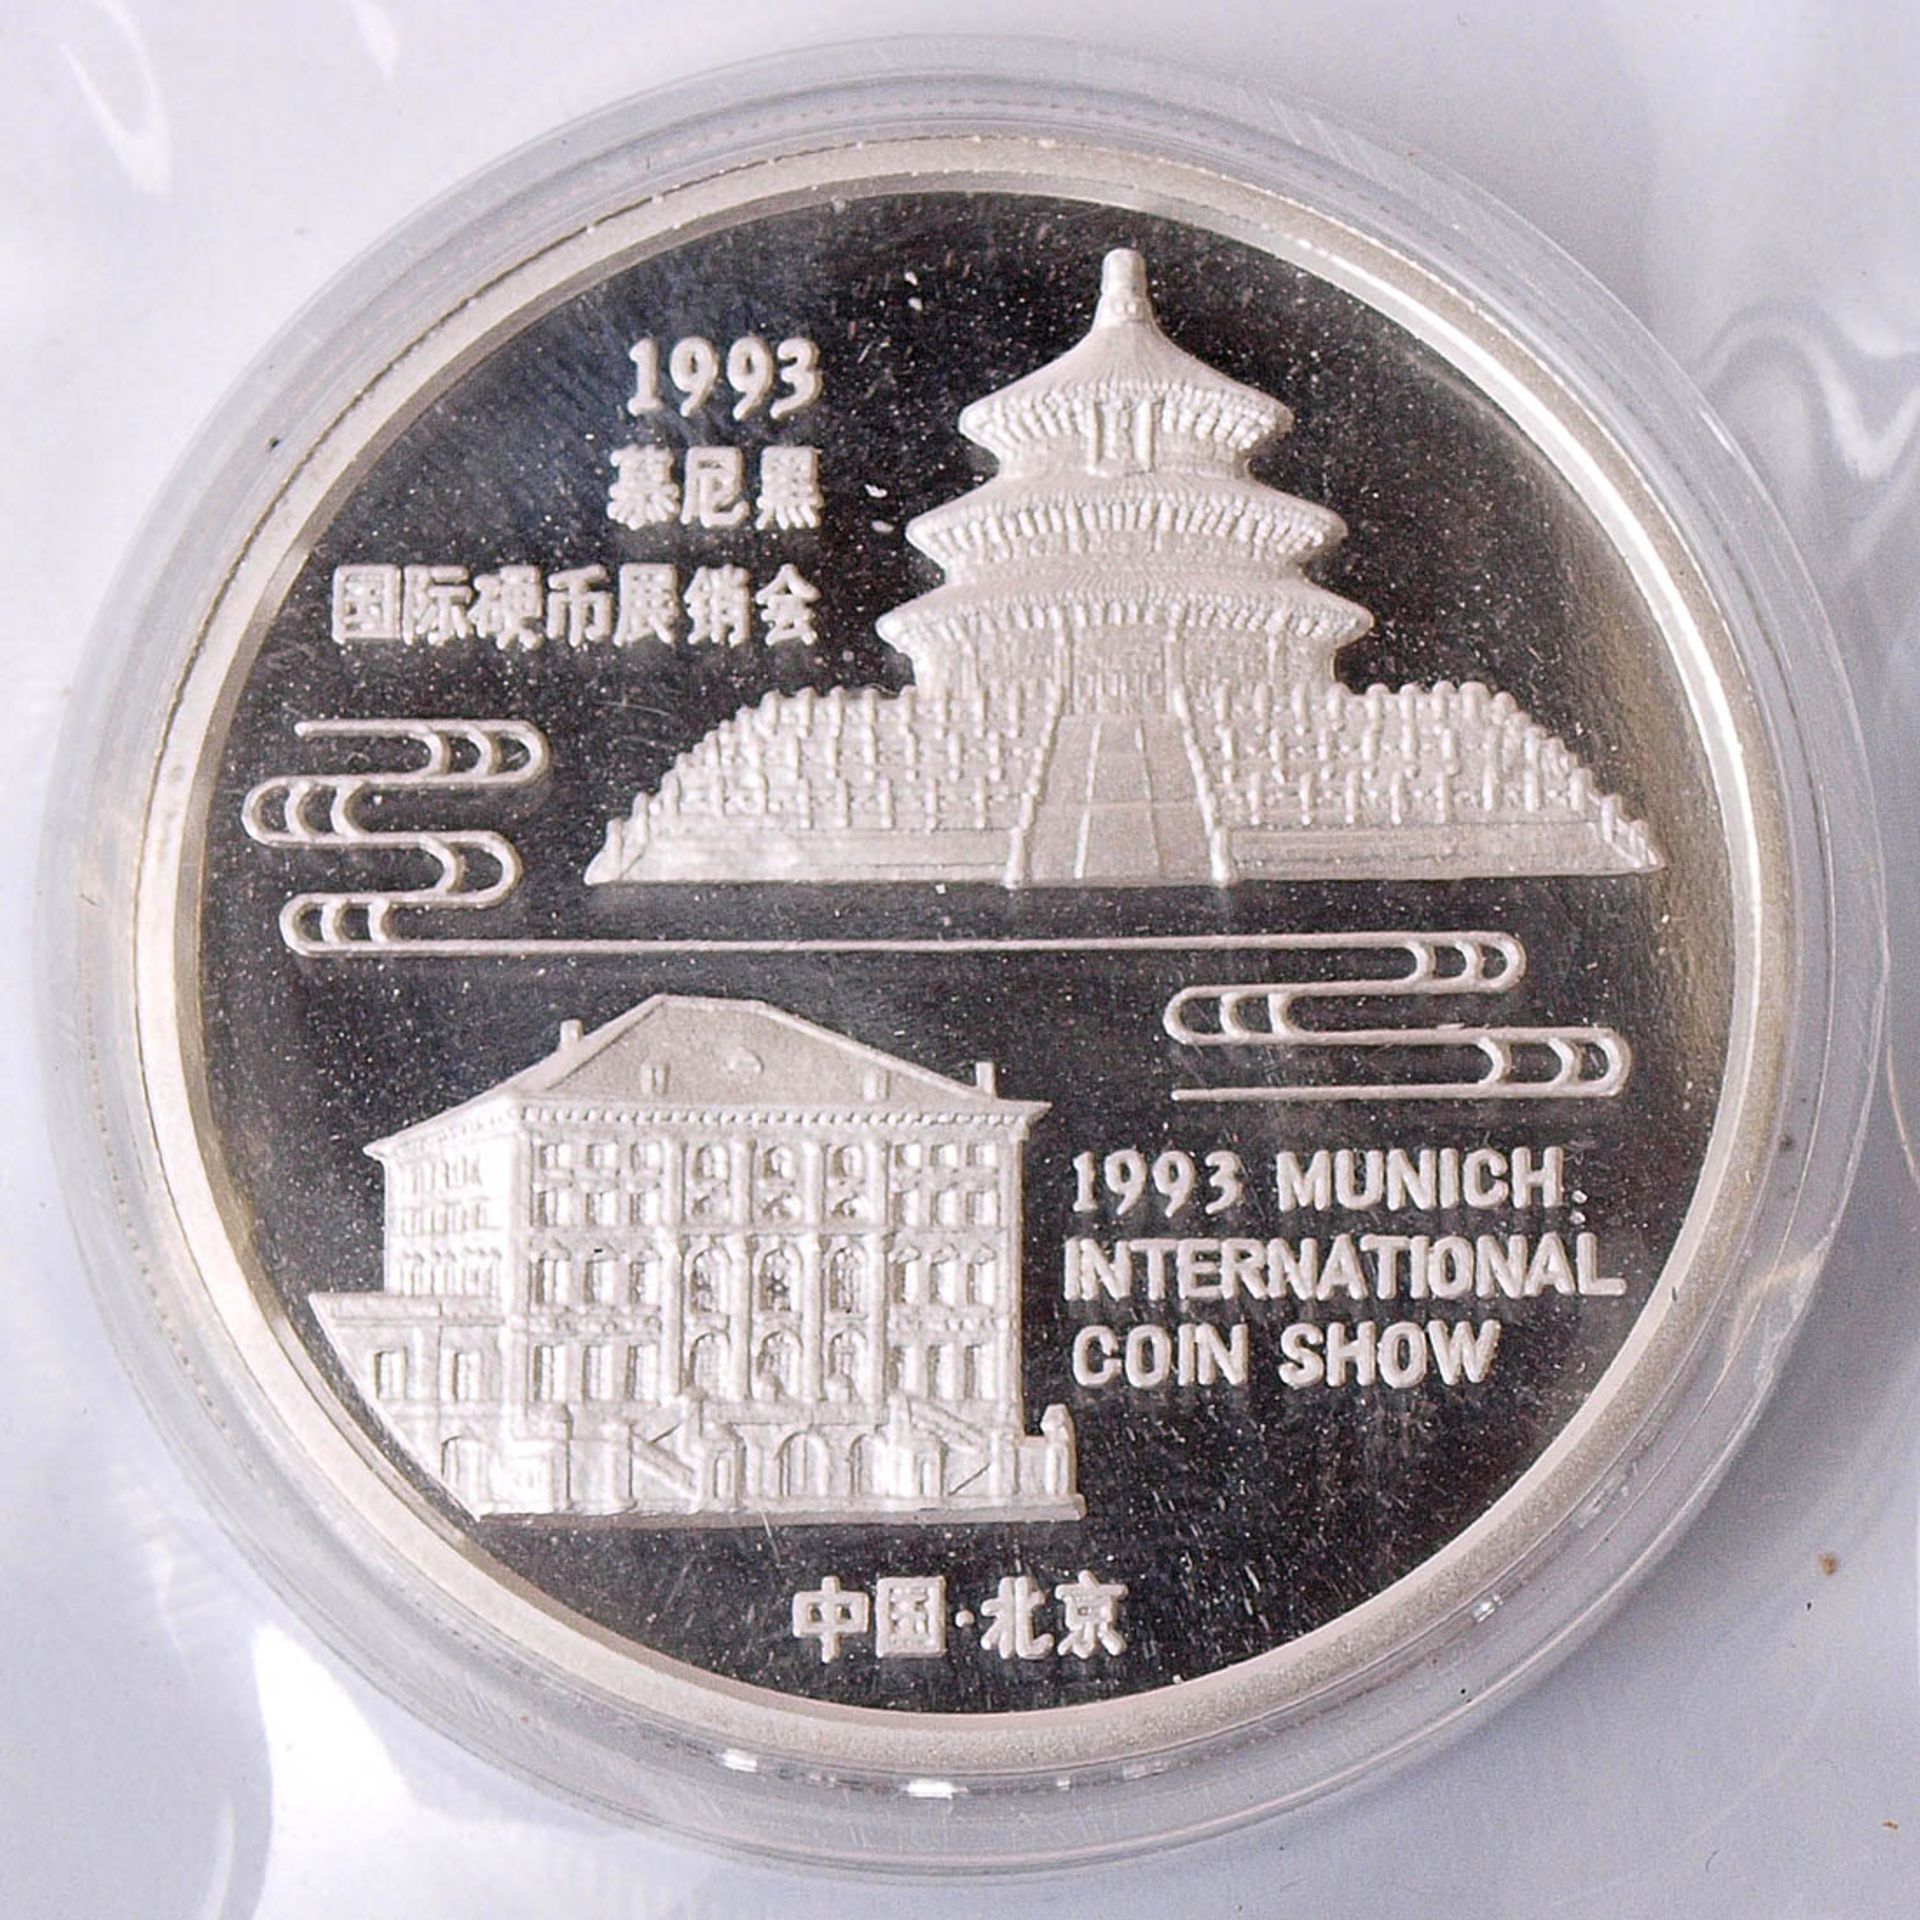 Panda-Sondermünze, China 1993 Nennwert 10 Yuan, Durchm.40mm. Prägung zur Munich International Coin